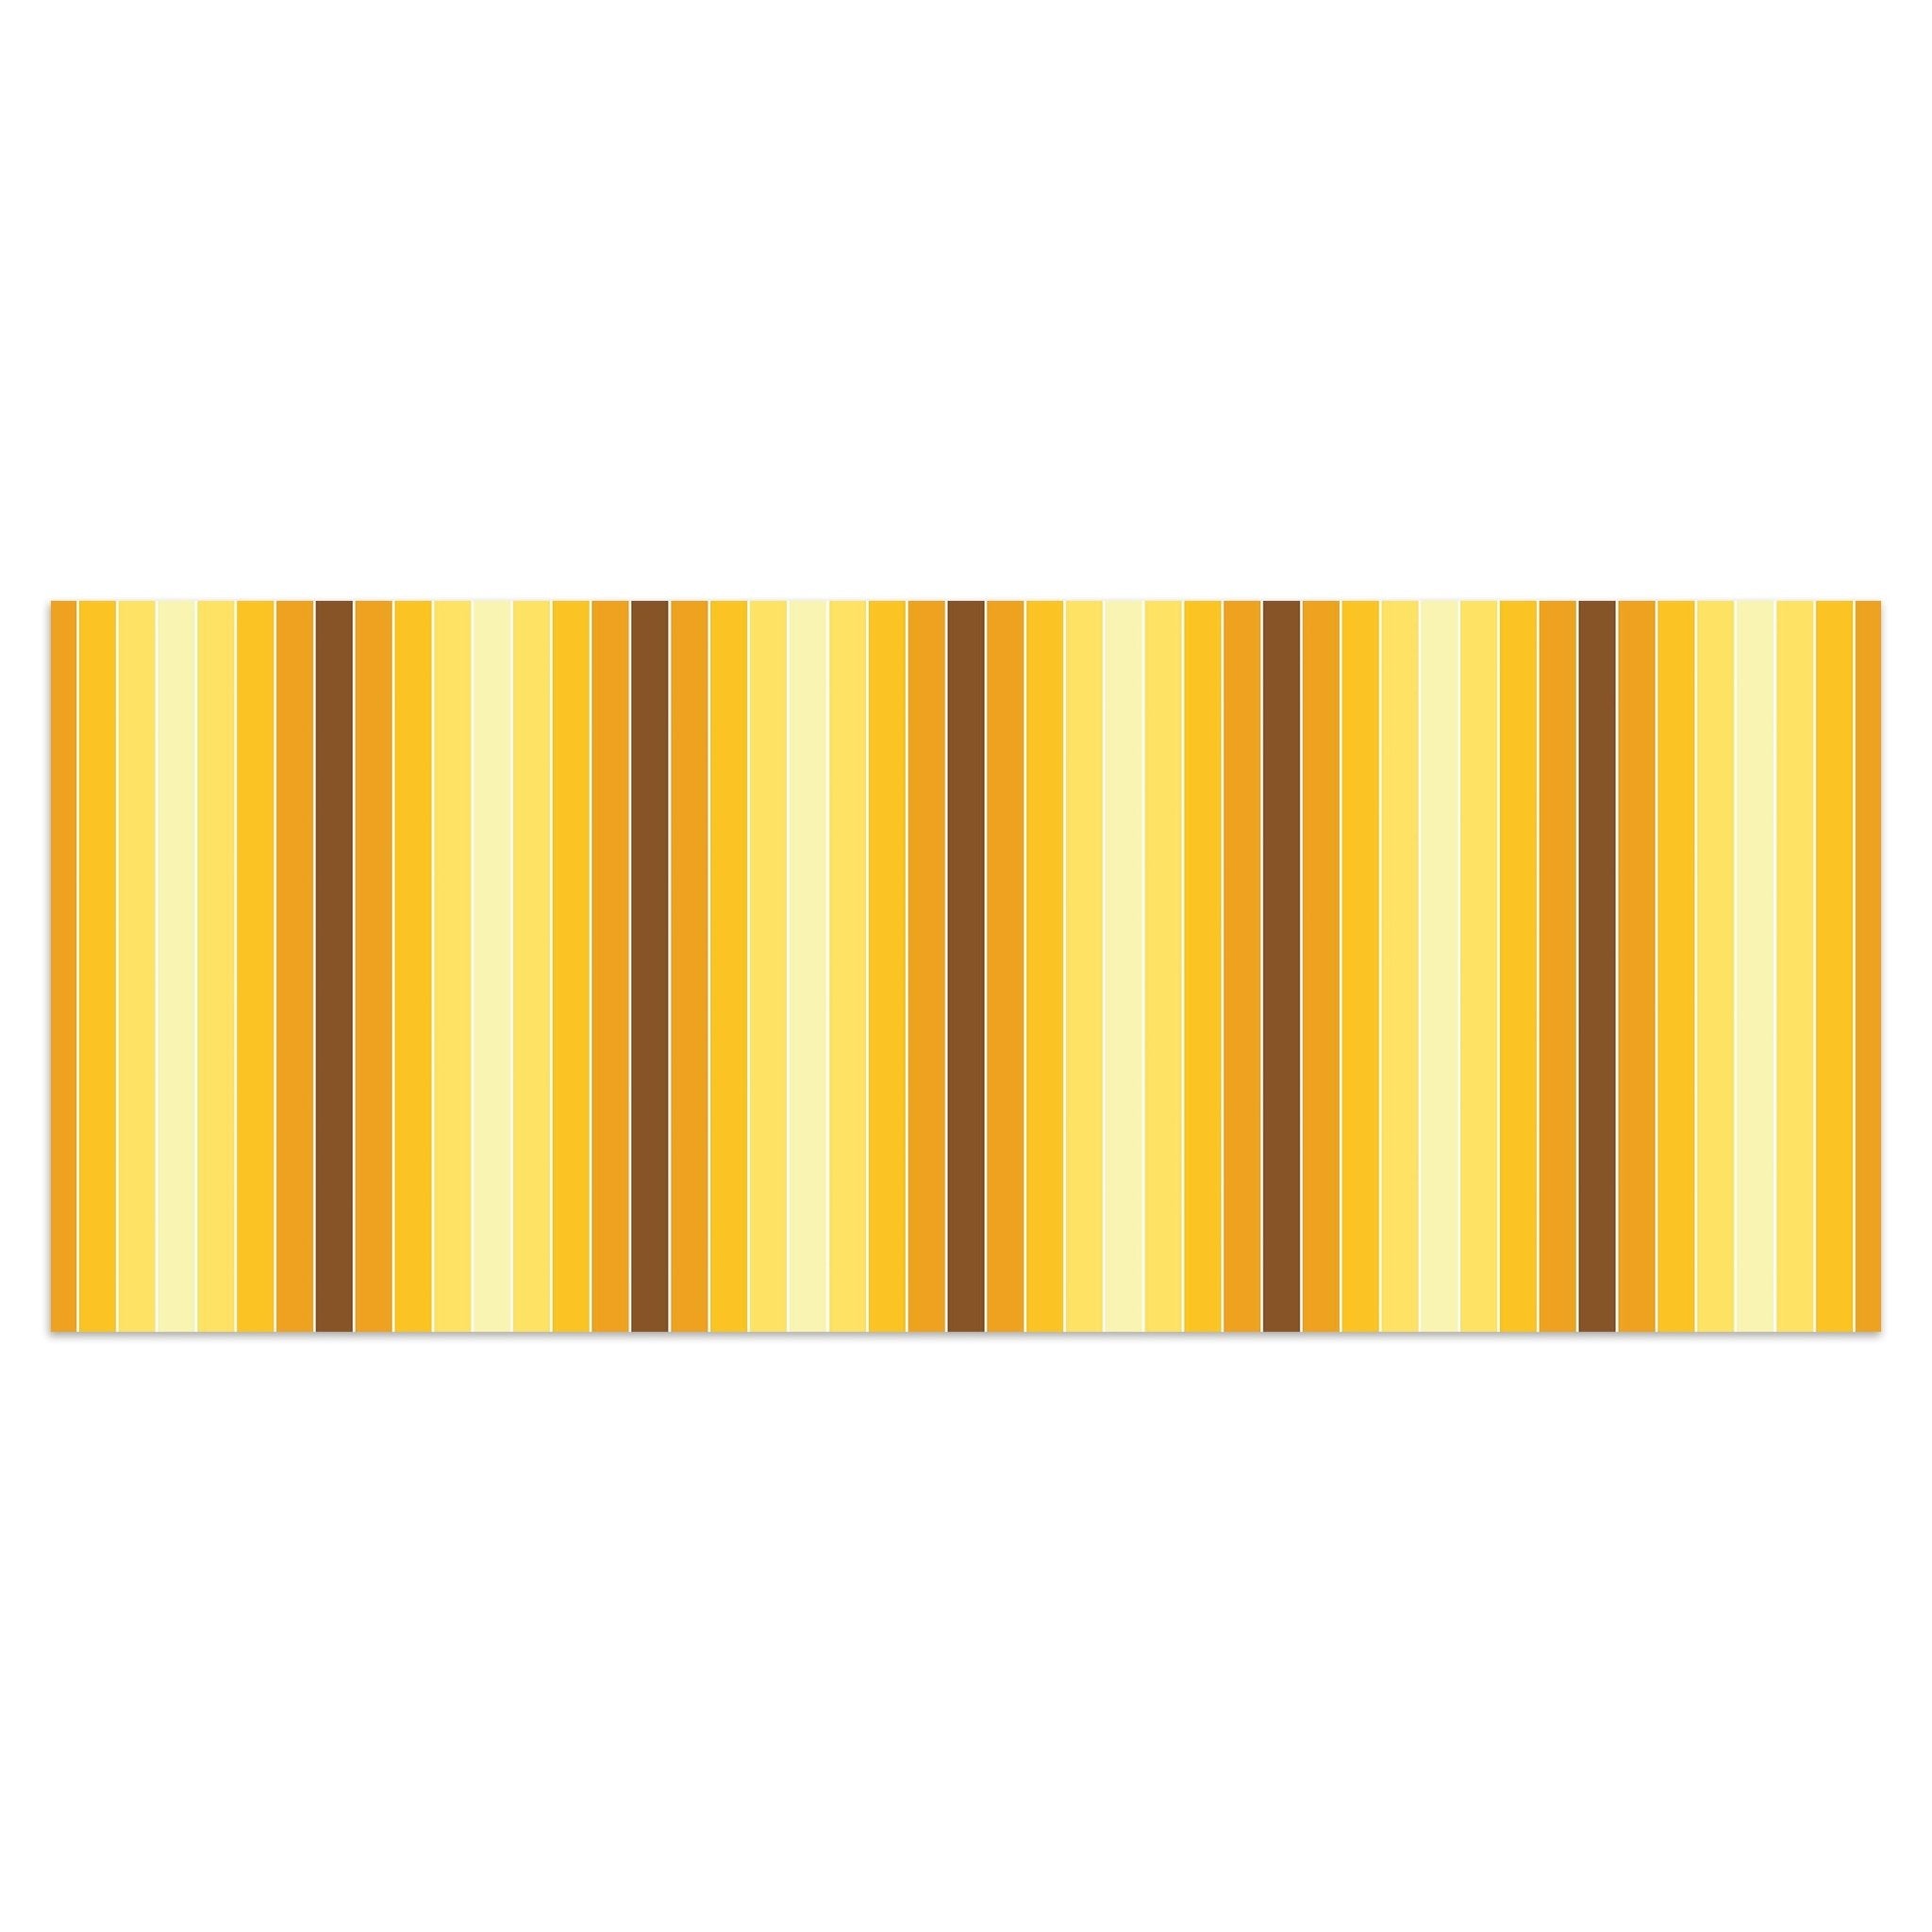 Leinwandbild Gelb Muster M0093 kaufen - Bild 1